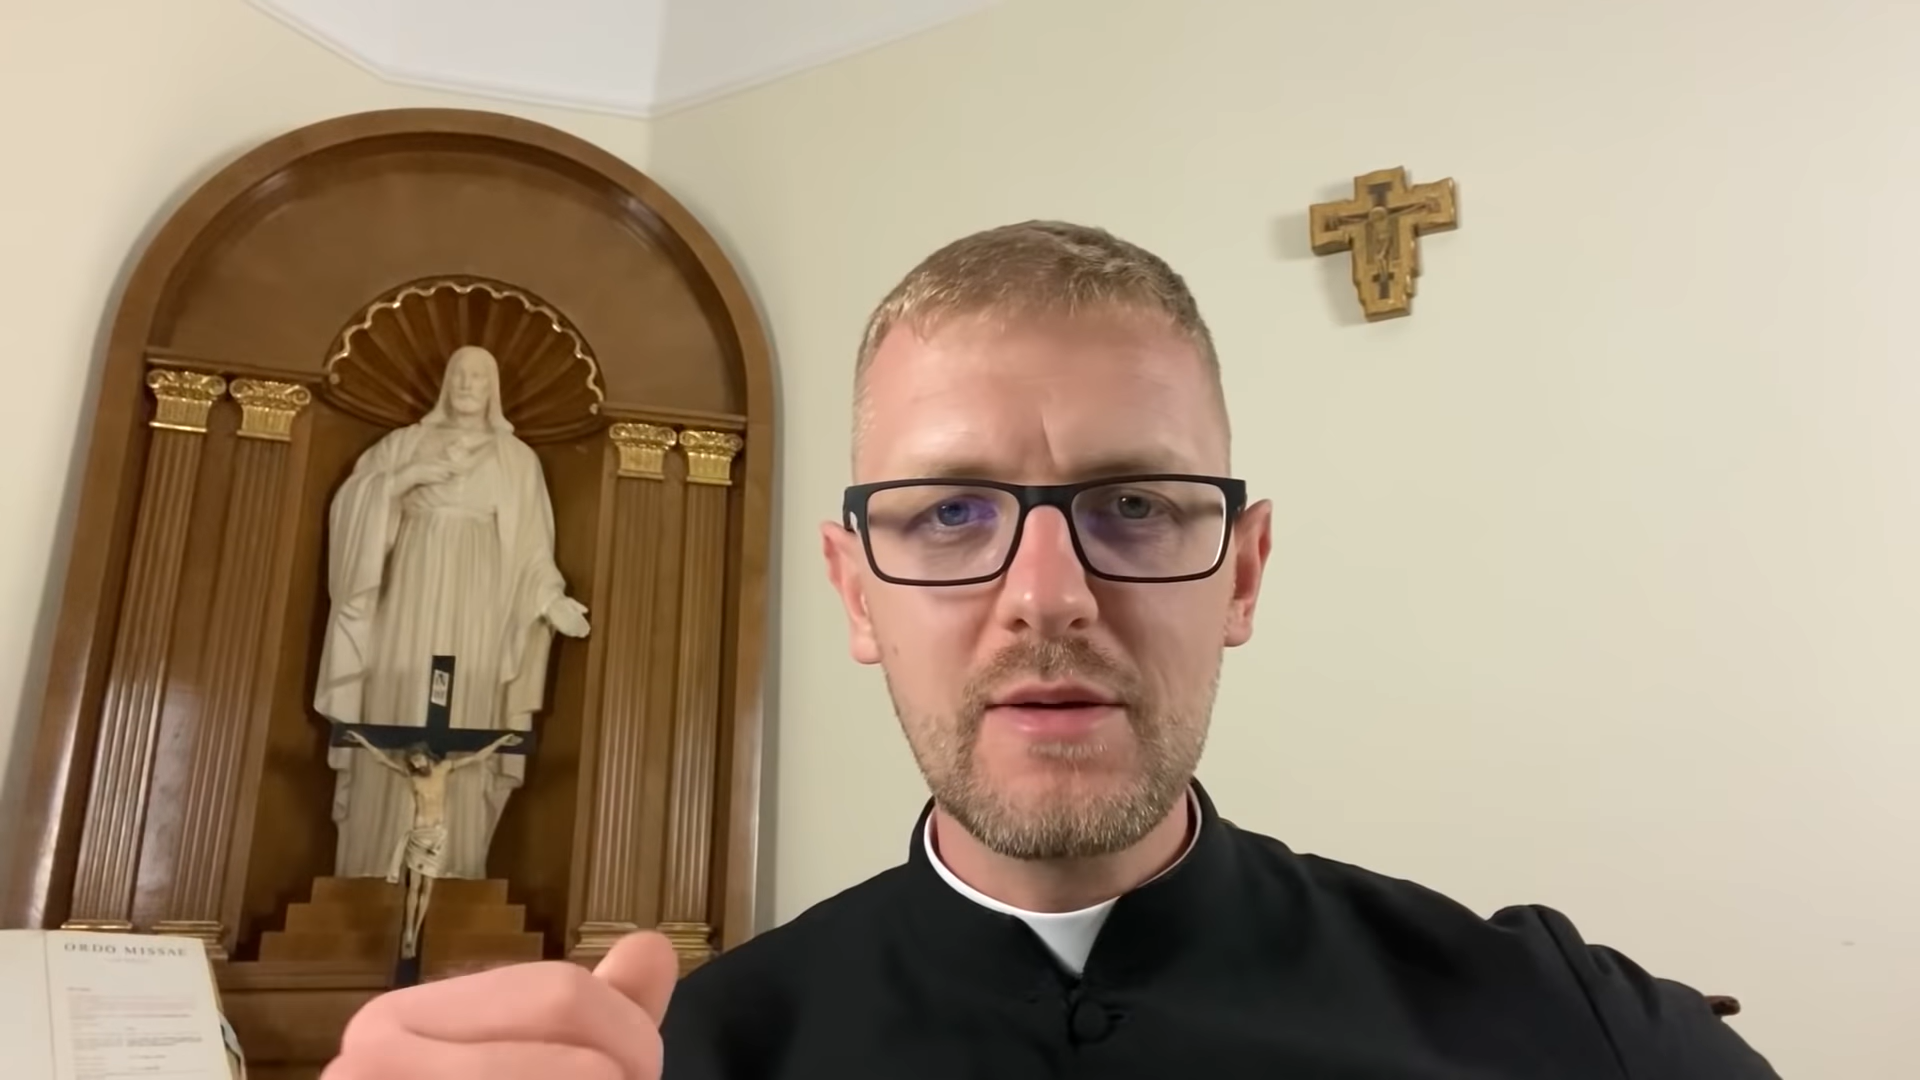 Hodász atya megírta, hogy gyerekkorában molesztálta egy pap